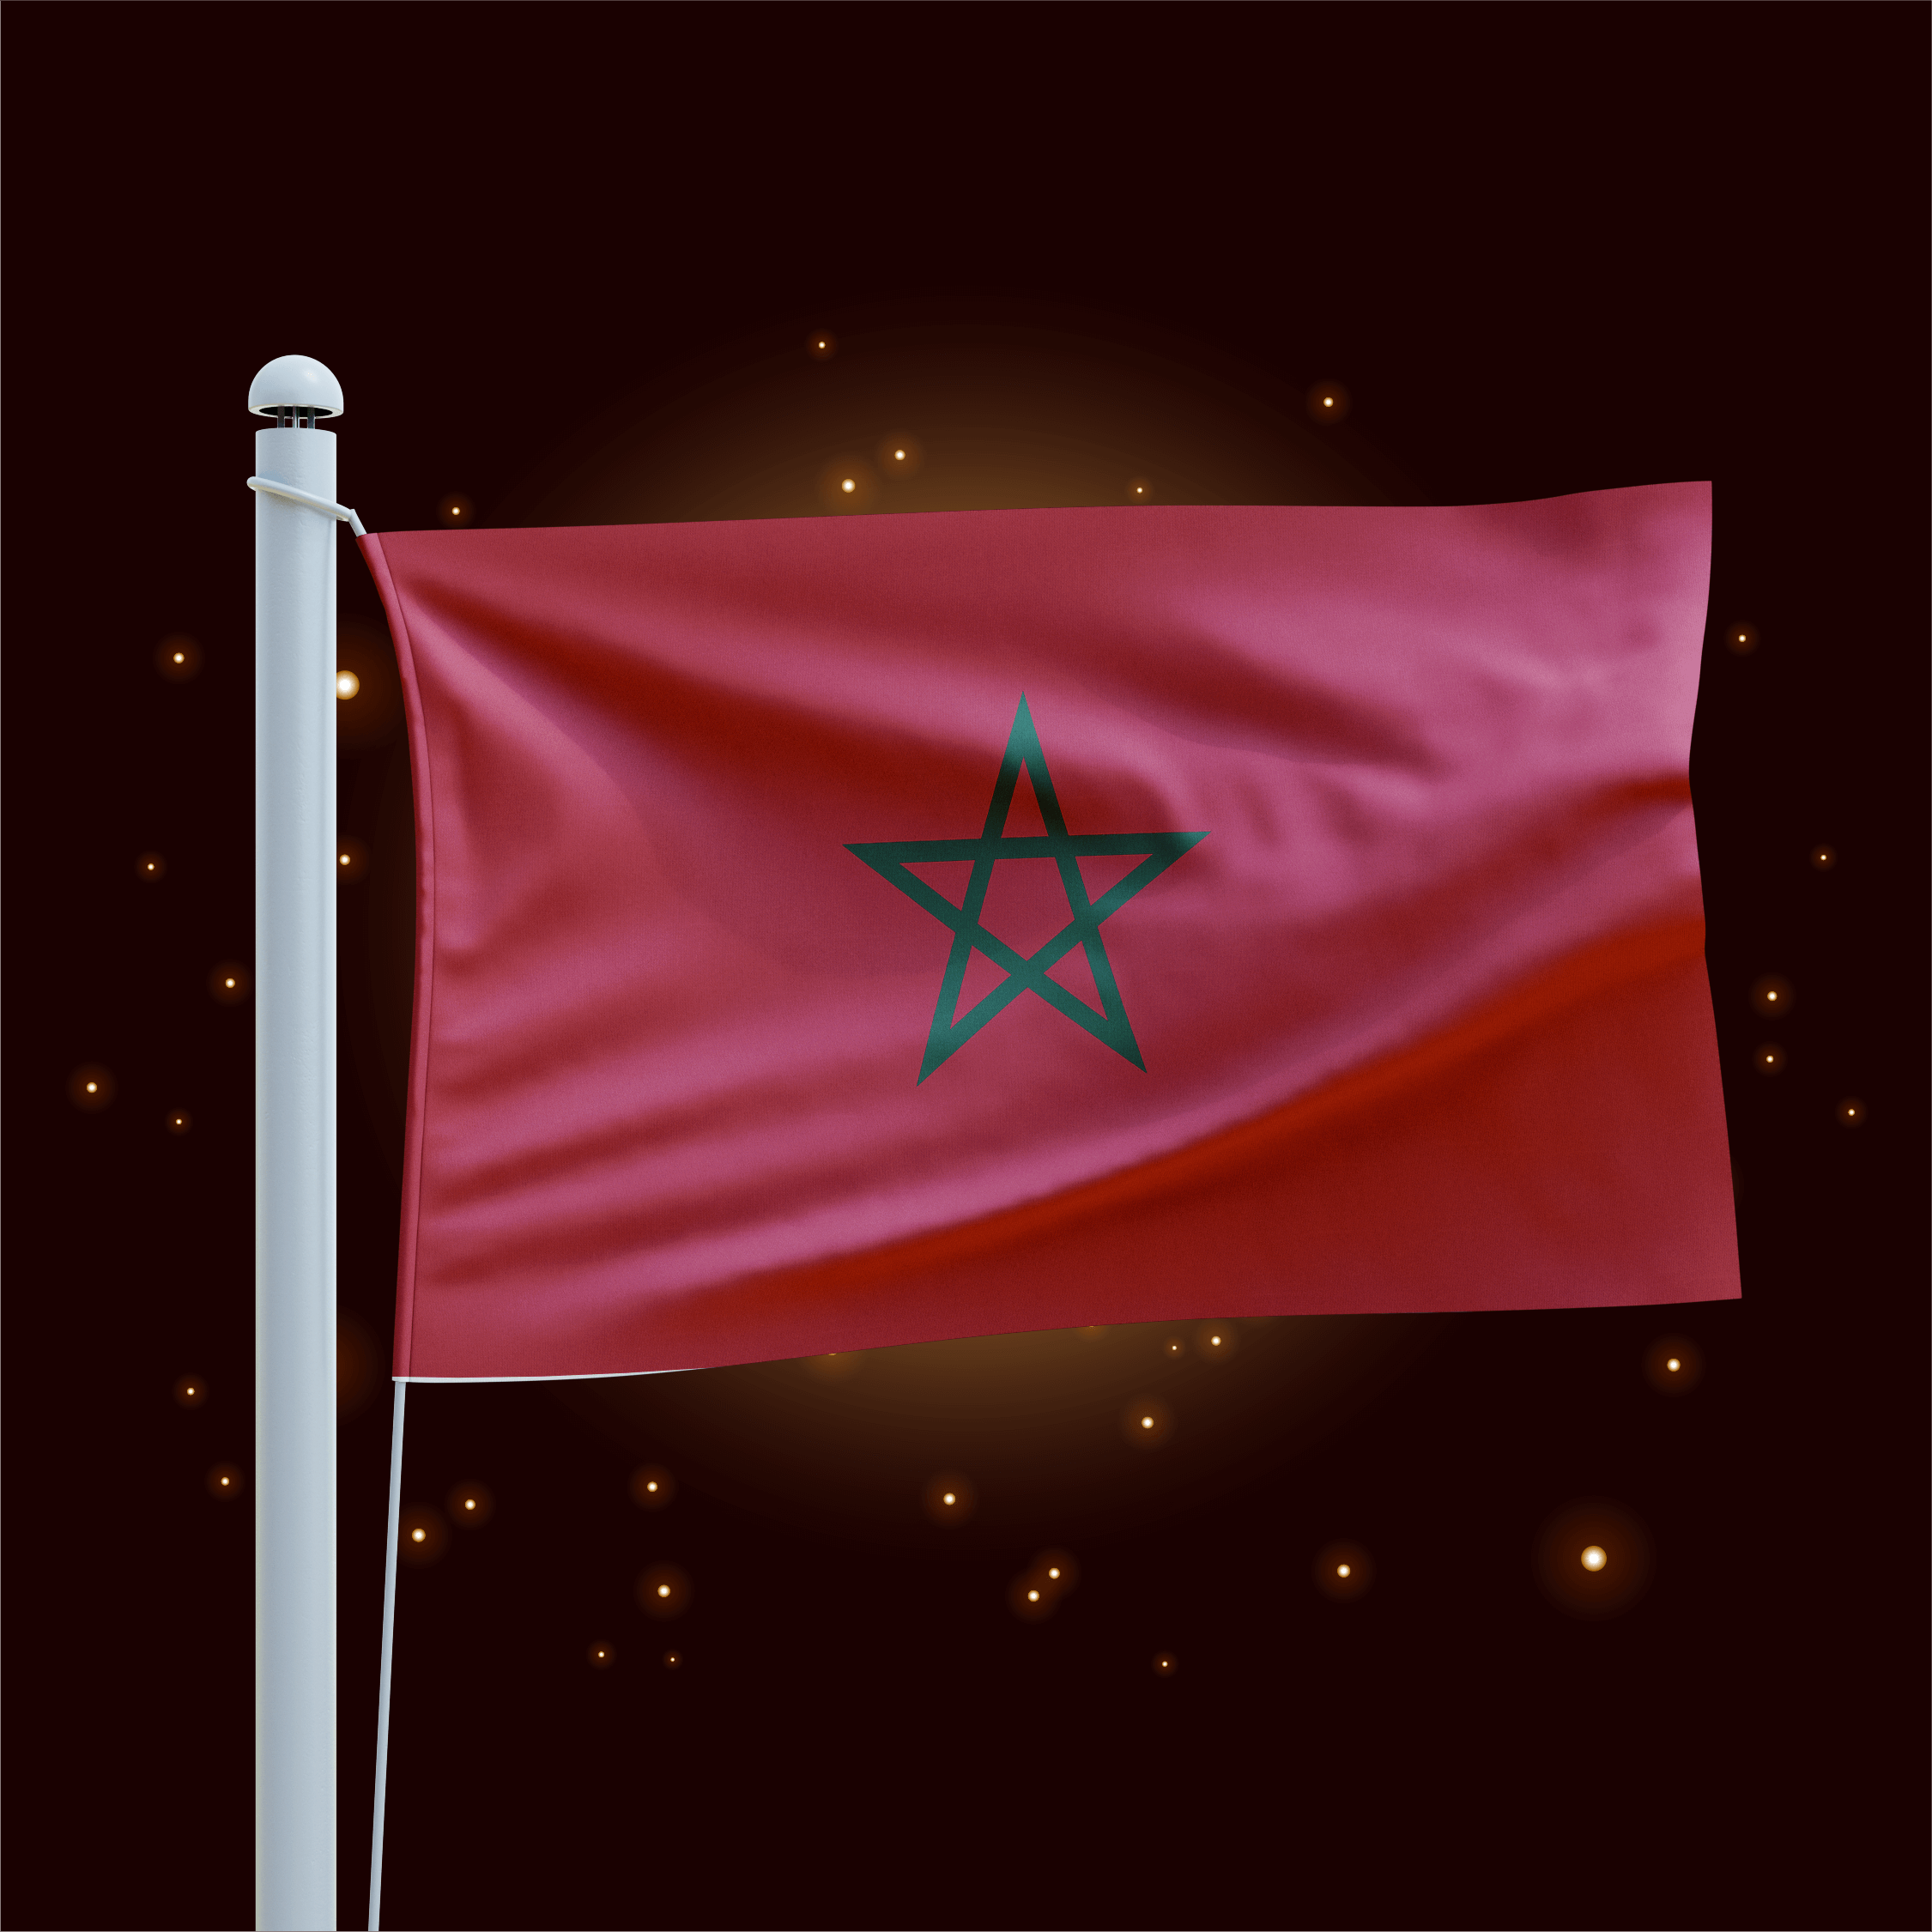 Morocco Online Casinos